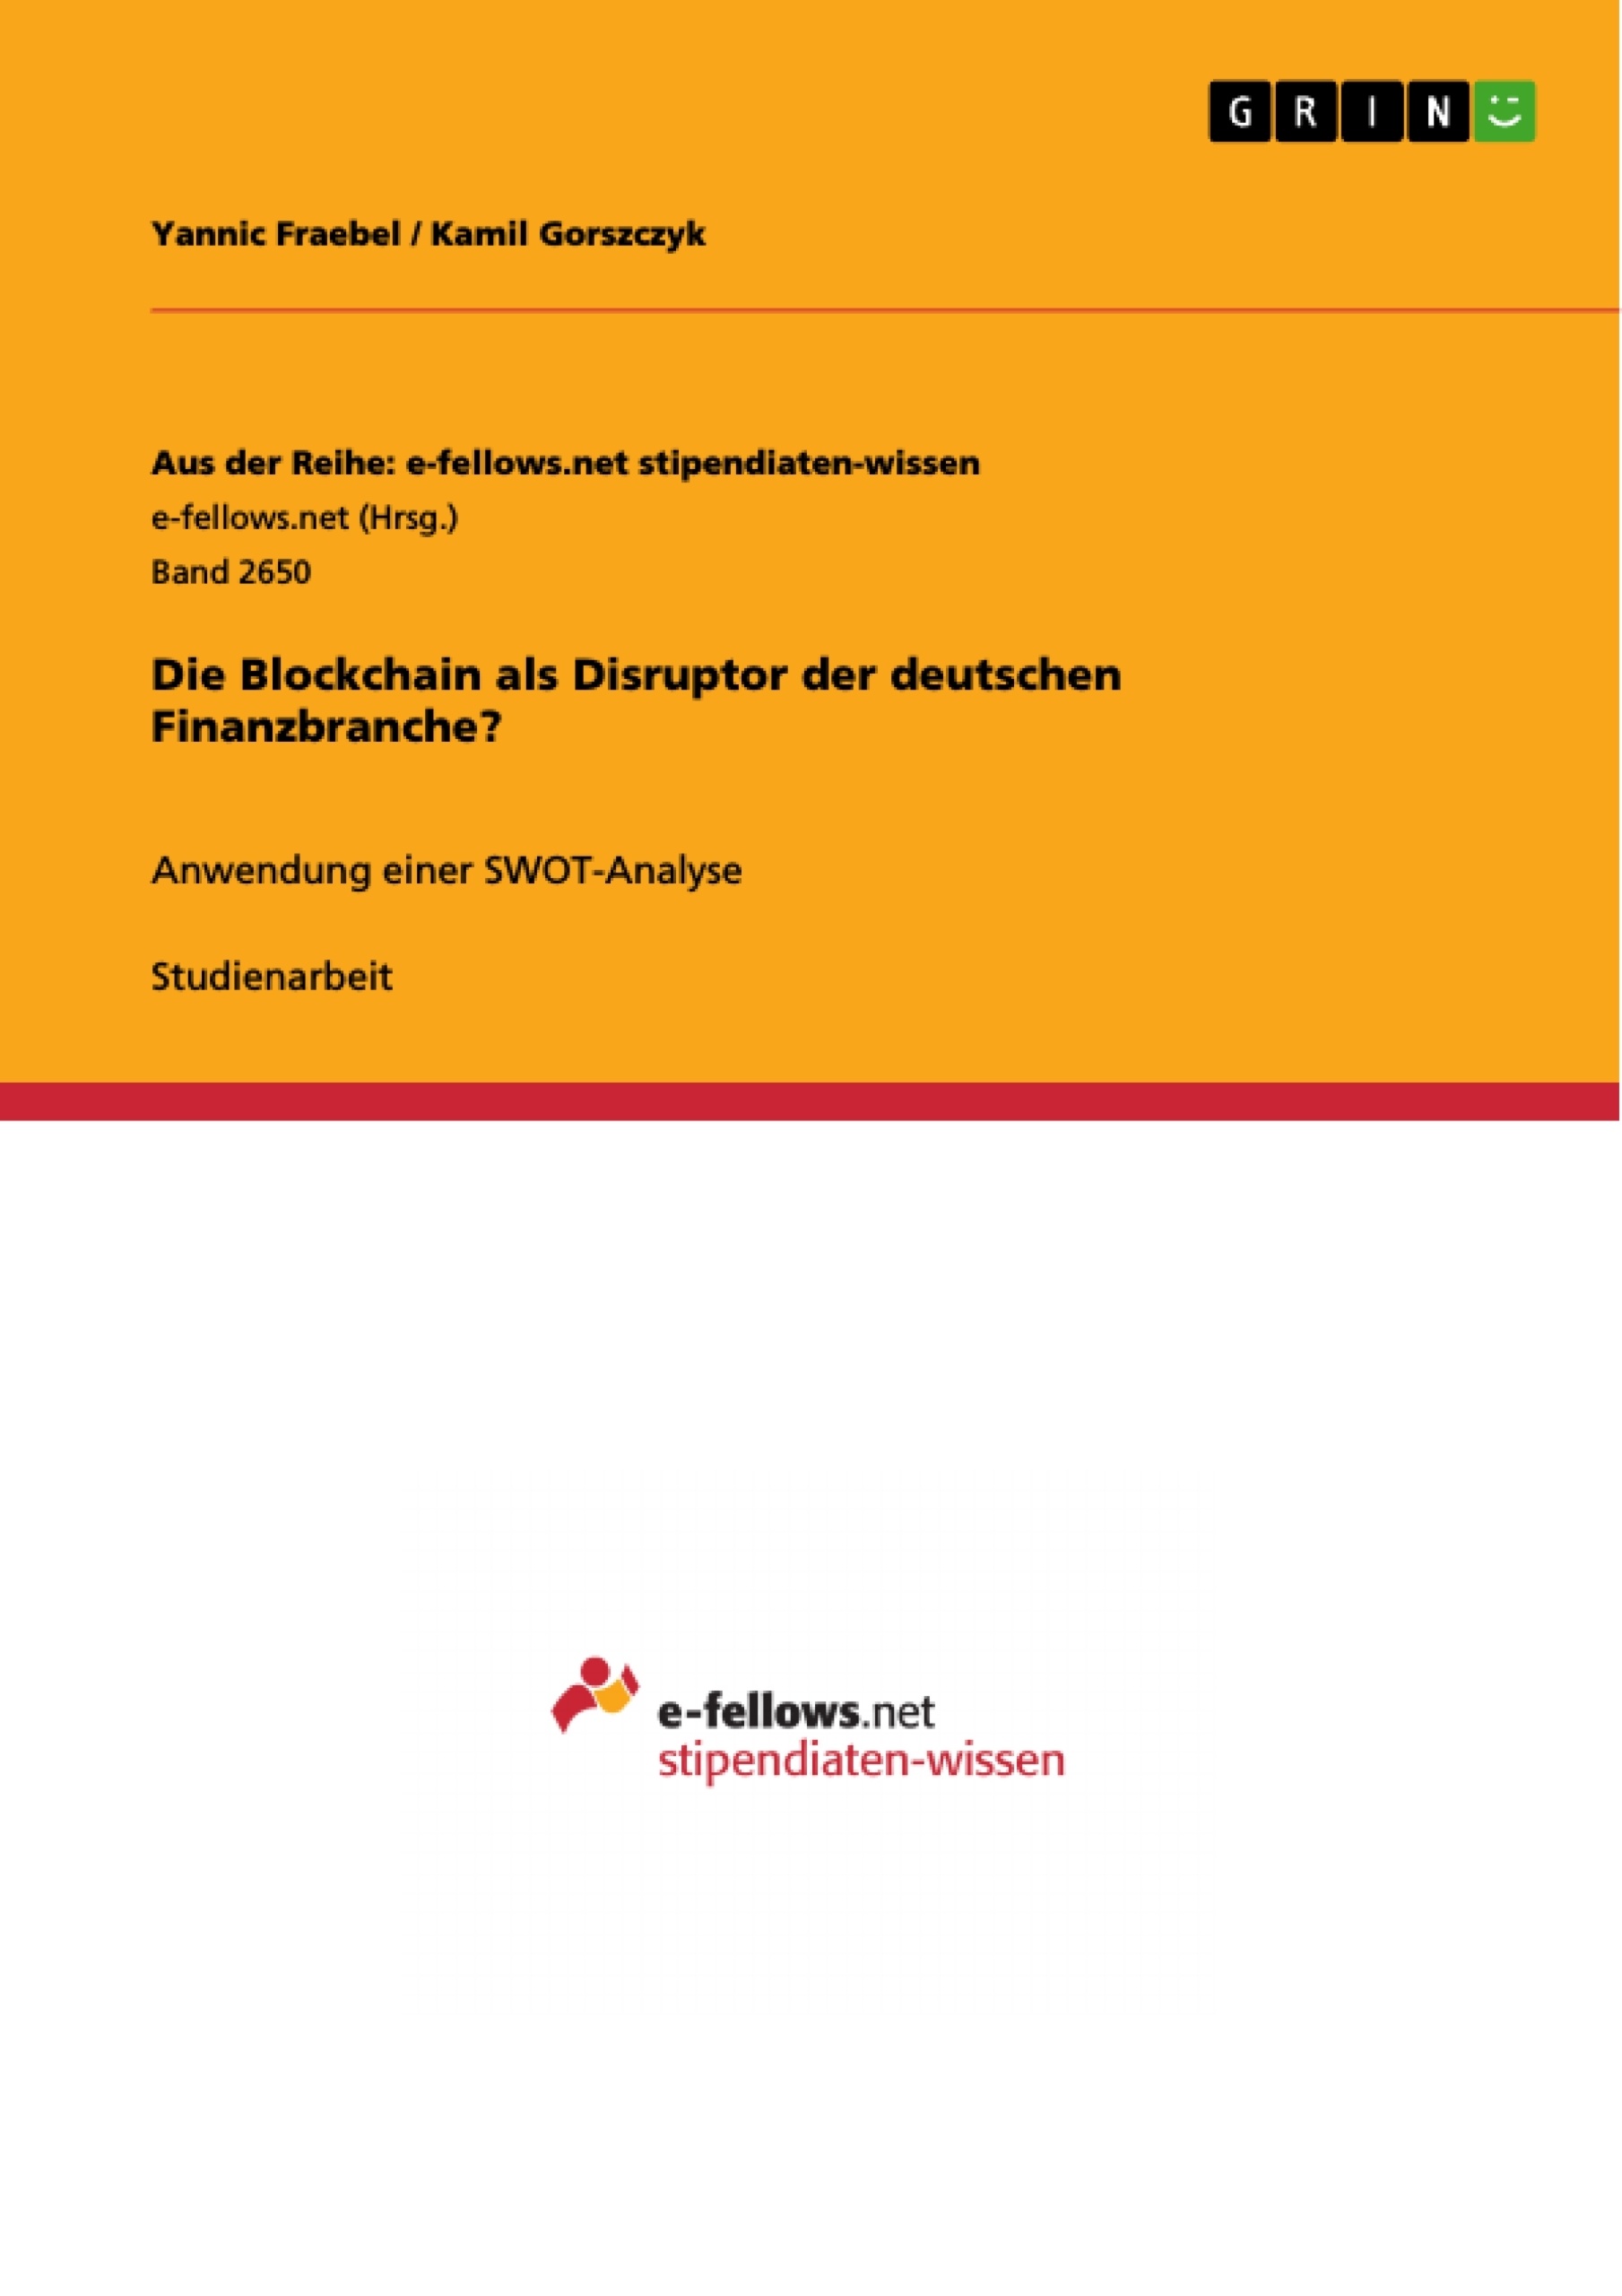 Título: Die Blockchain als Disruptor der deutschen Finanzbranche?